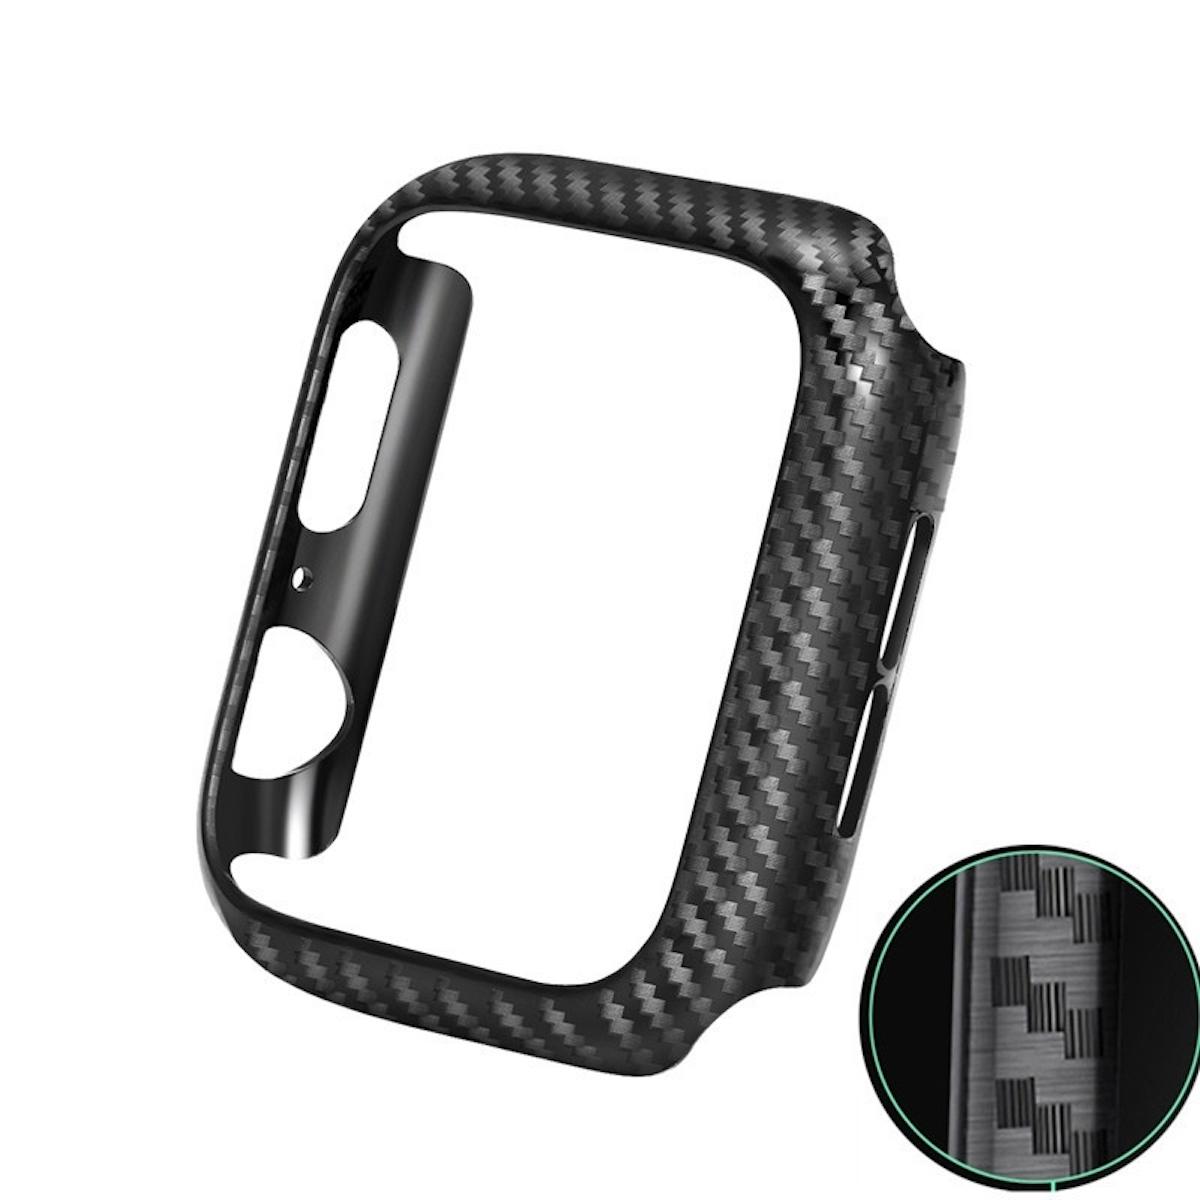 Design Carbon Apple 8 Watch Style Schock WIGENTO Gen. Serie / Smartwatchhülle(für 9 / Gehäuse Hülle 7 45mm)